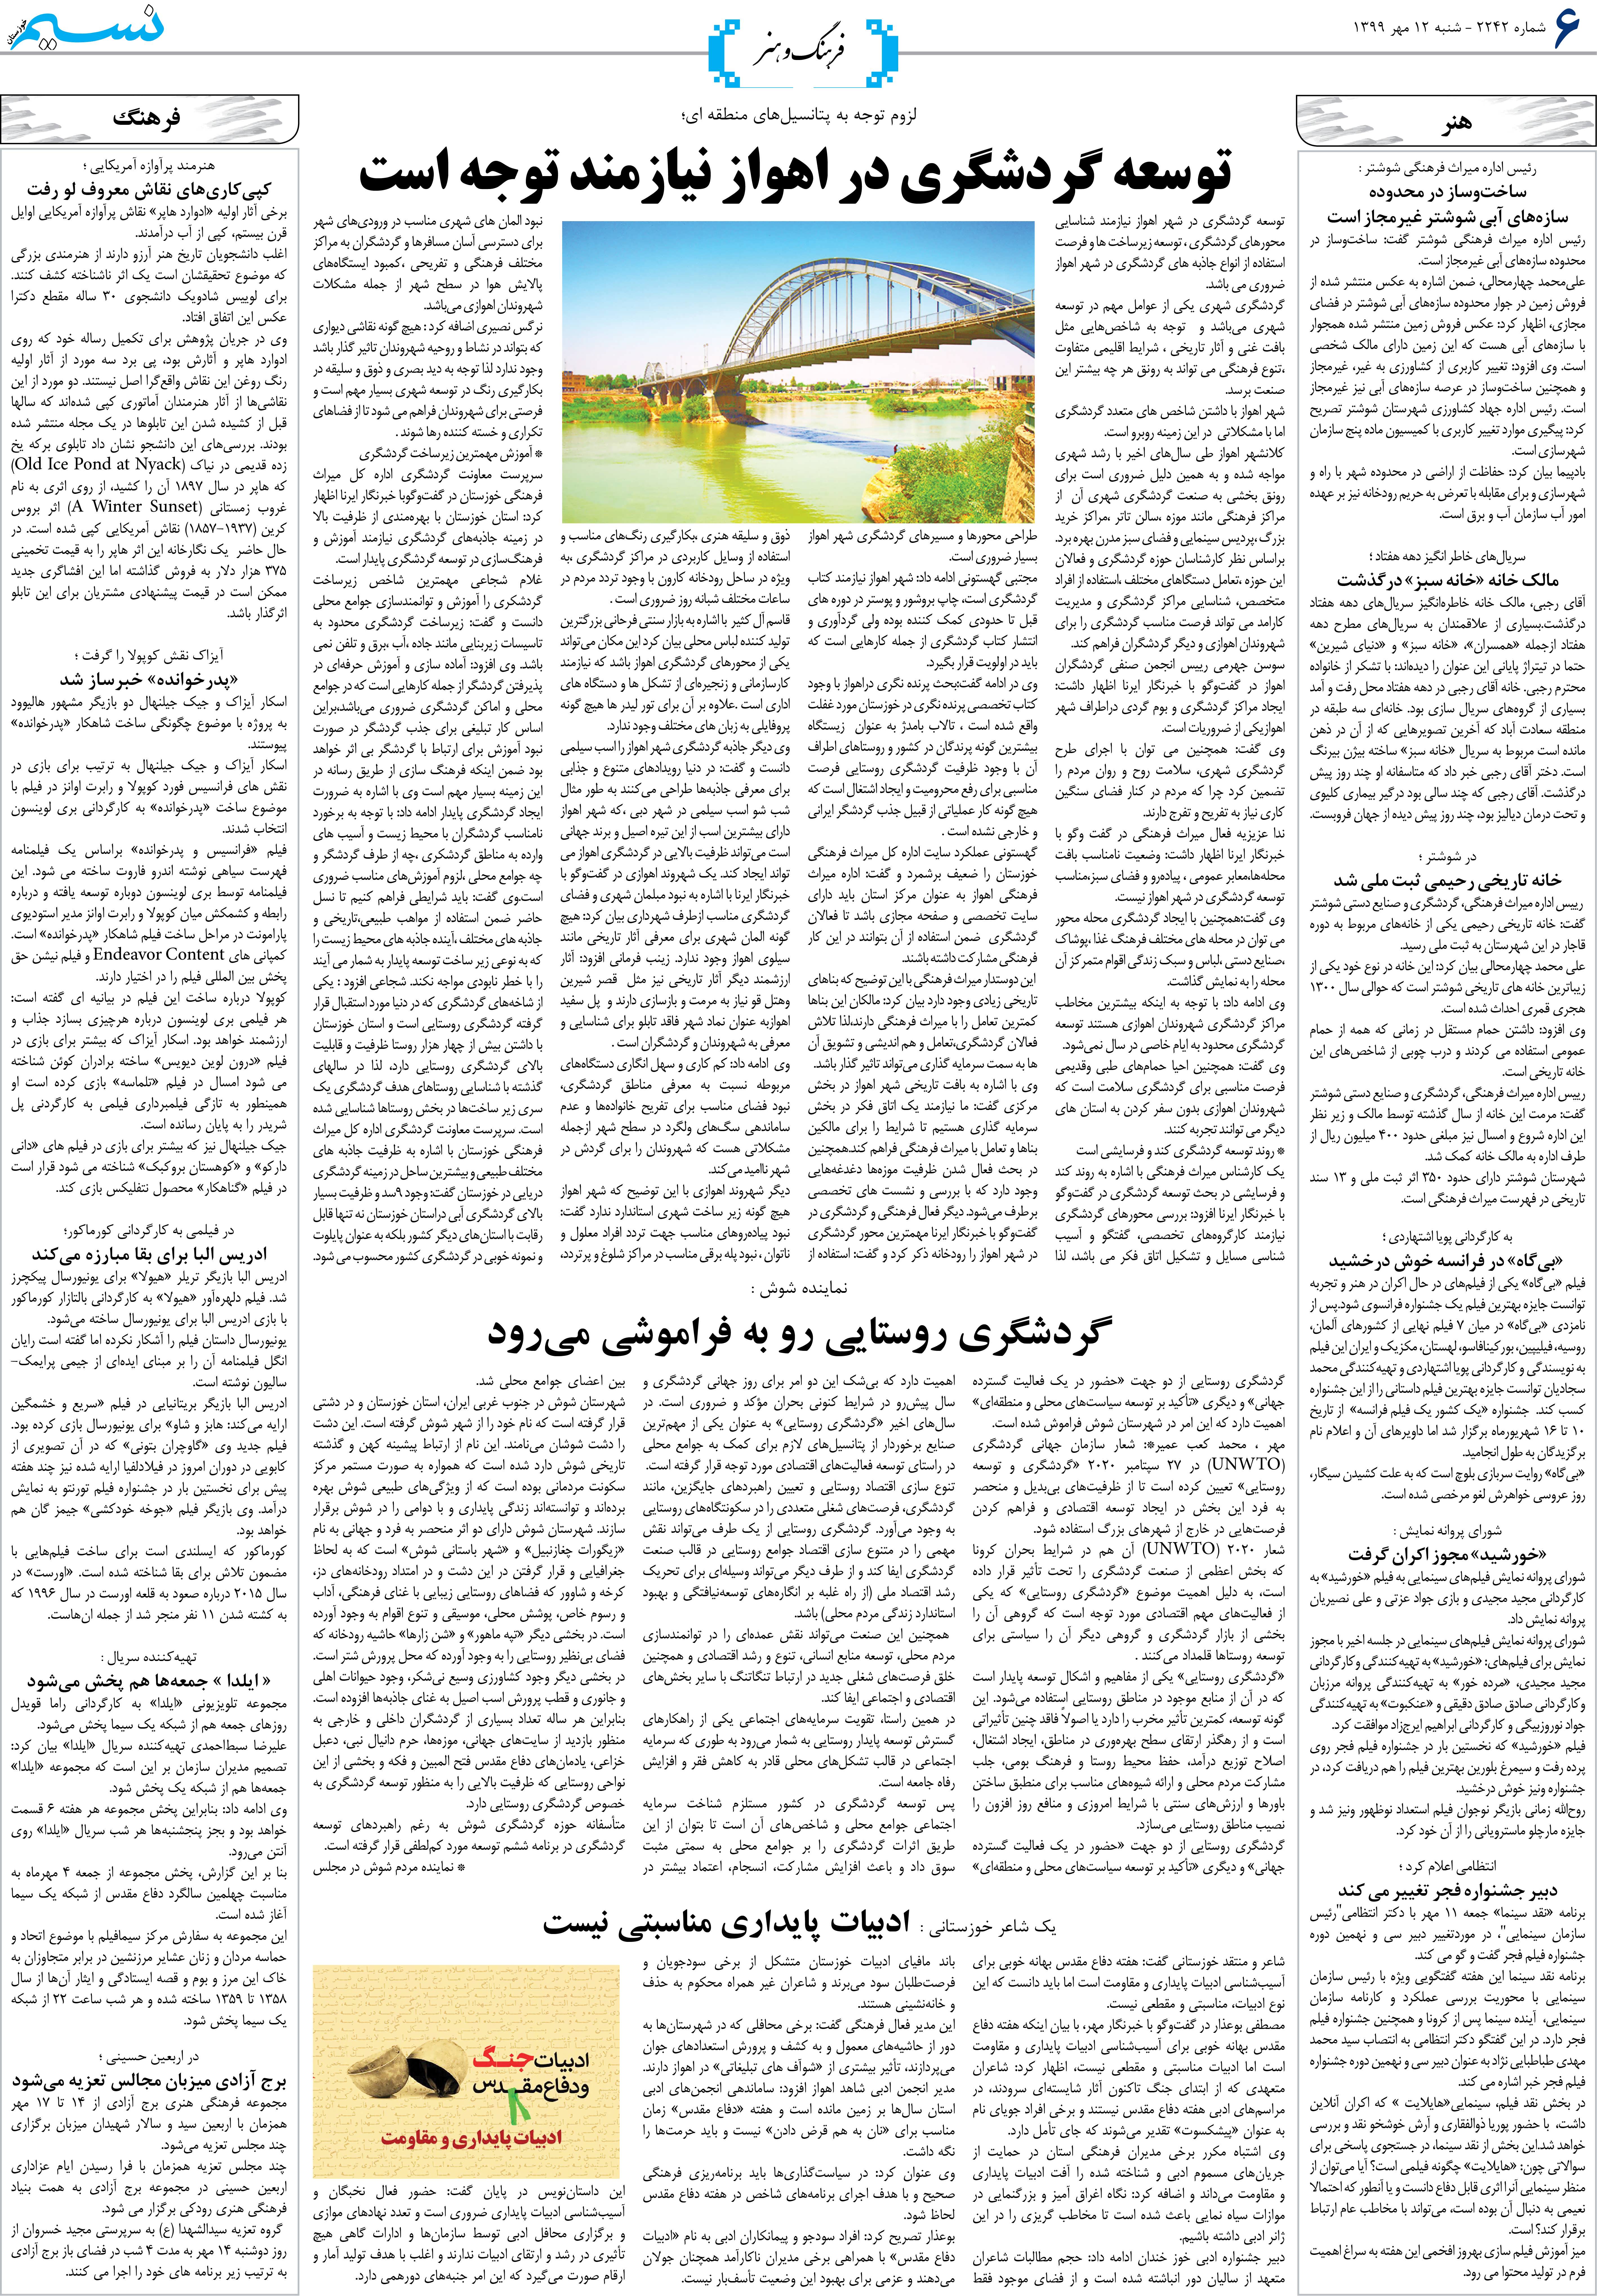 صفحه فرهنگ و هنر روزنامه نسیم شماره 2242